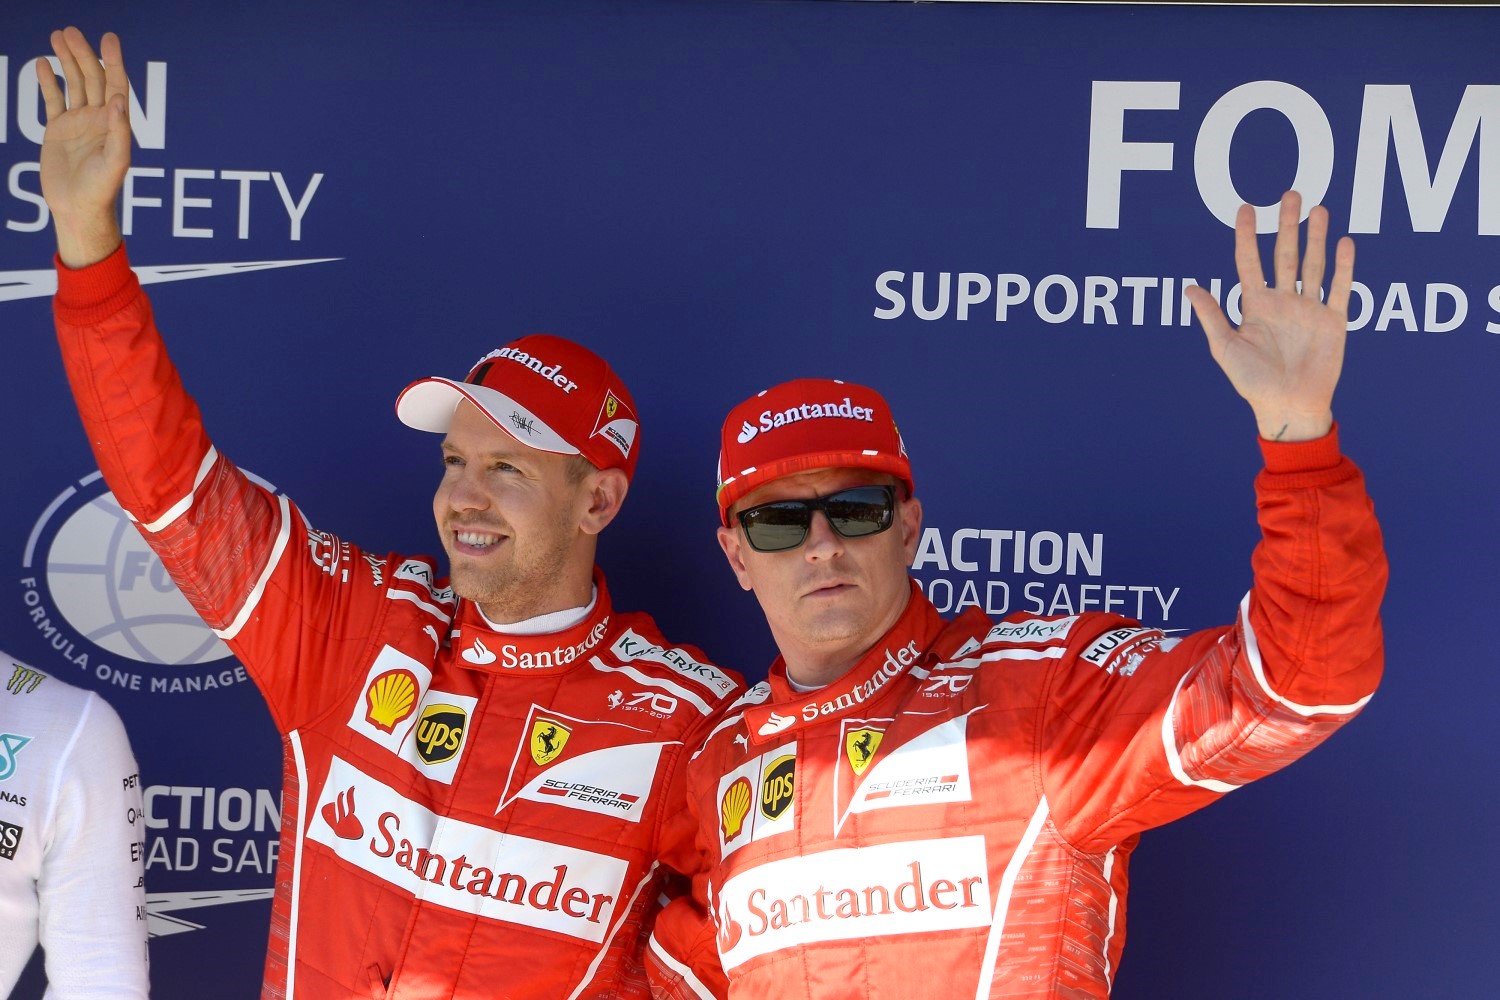 Vettel and Raikkonen finish 1-2